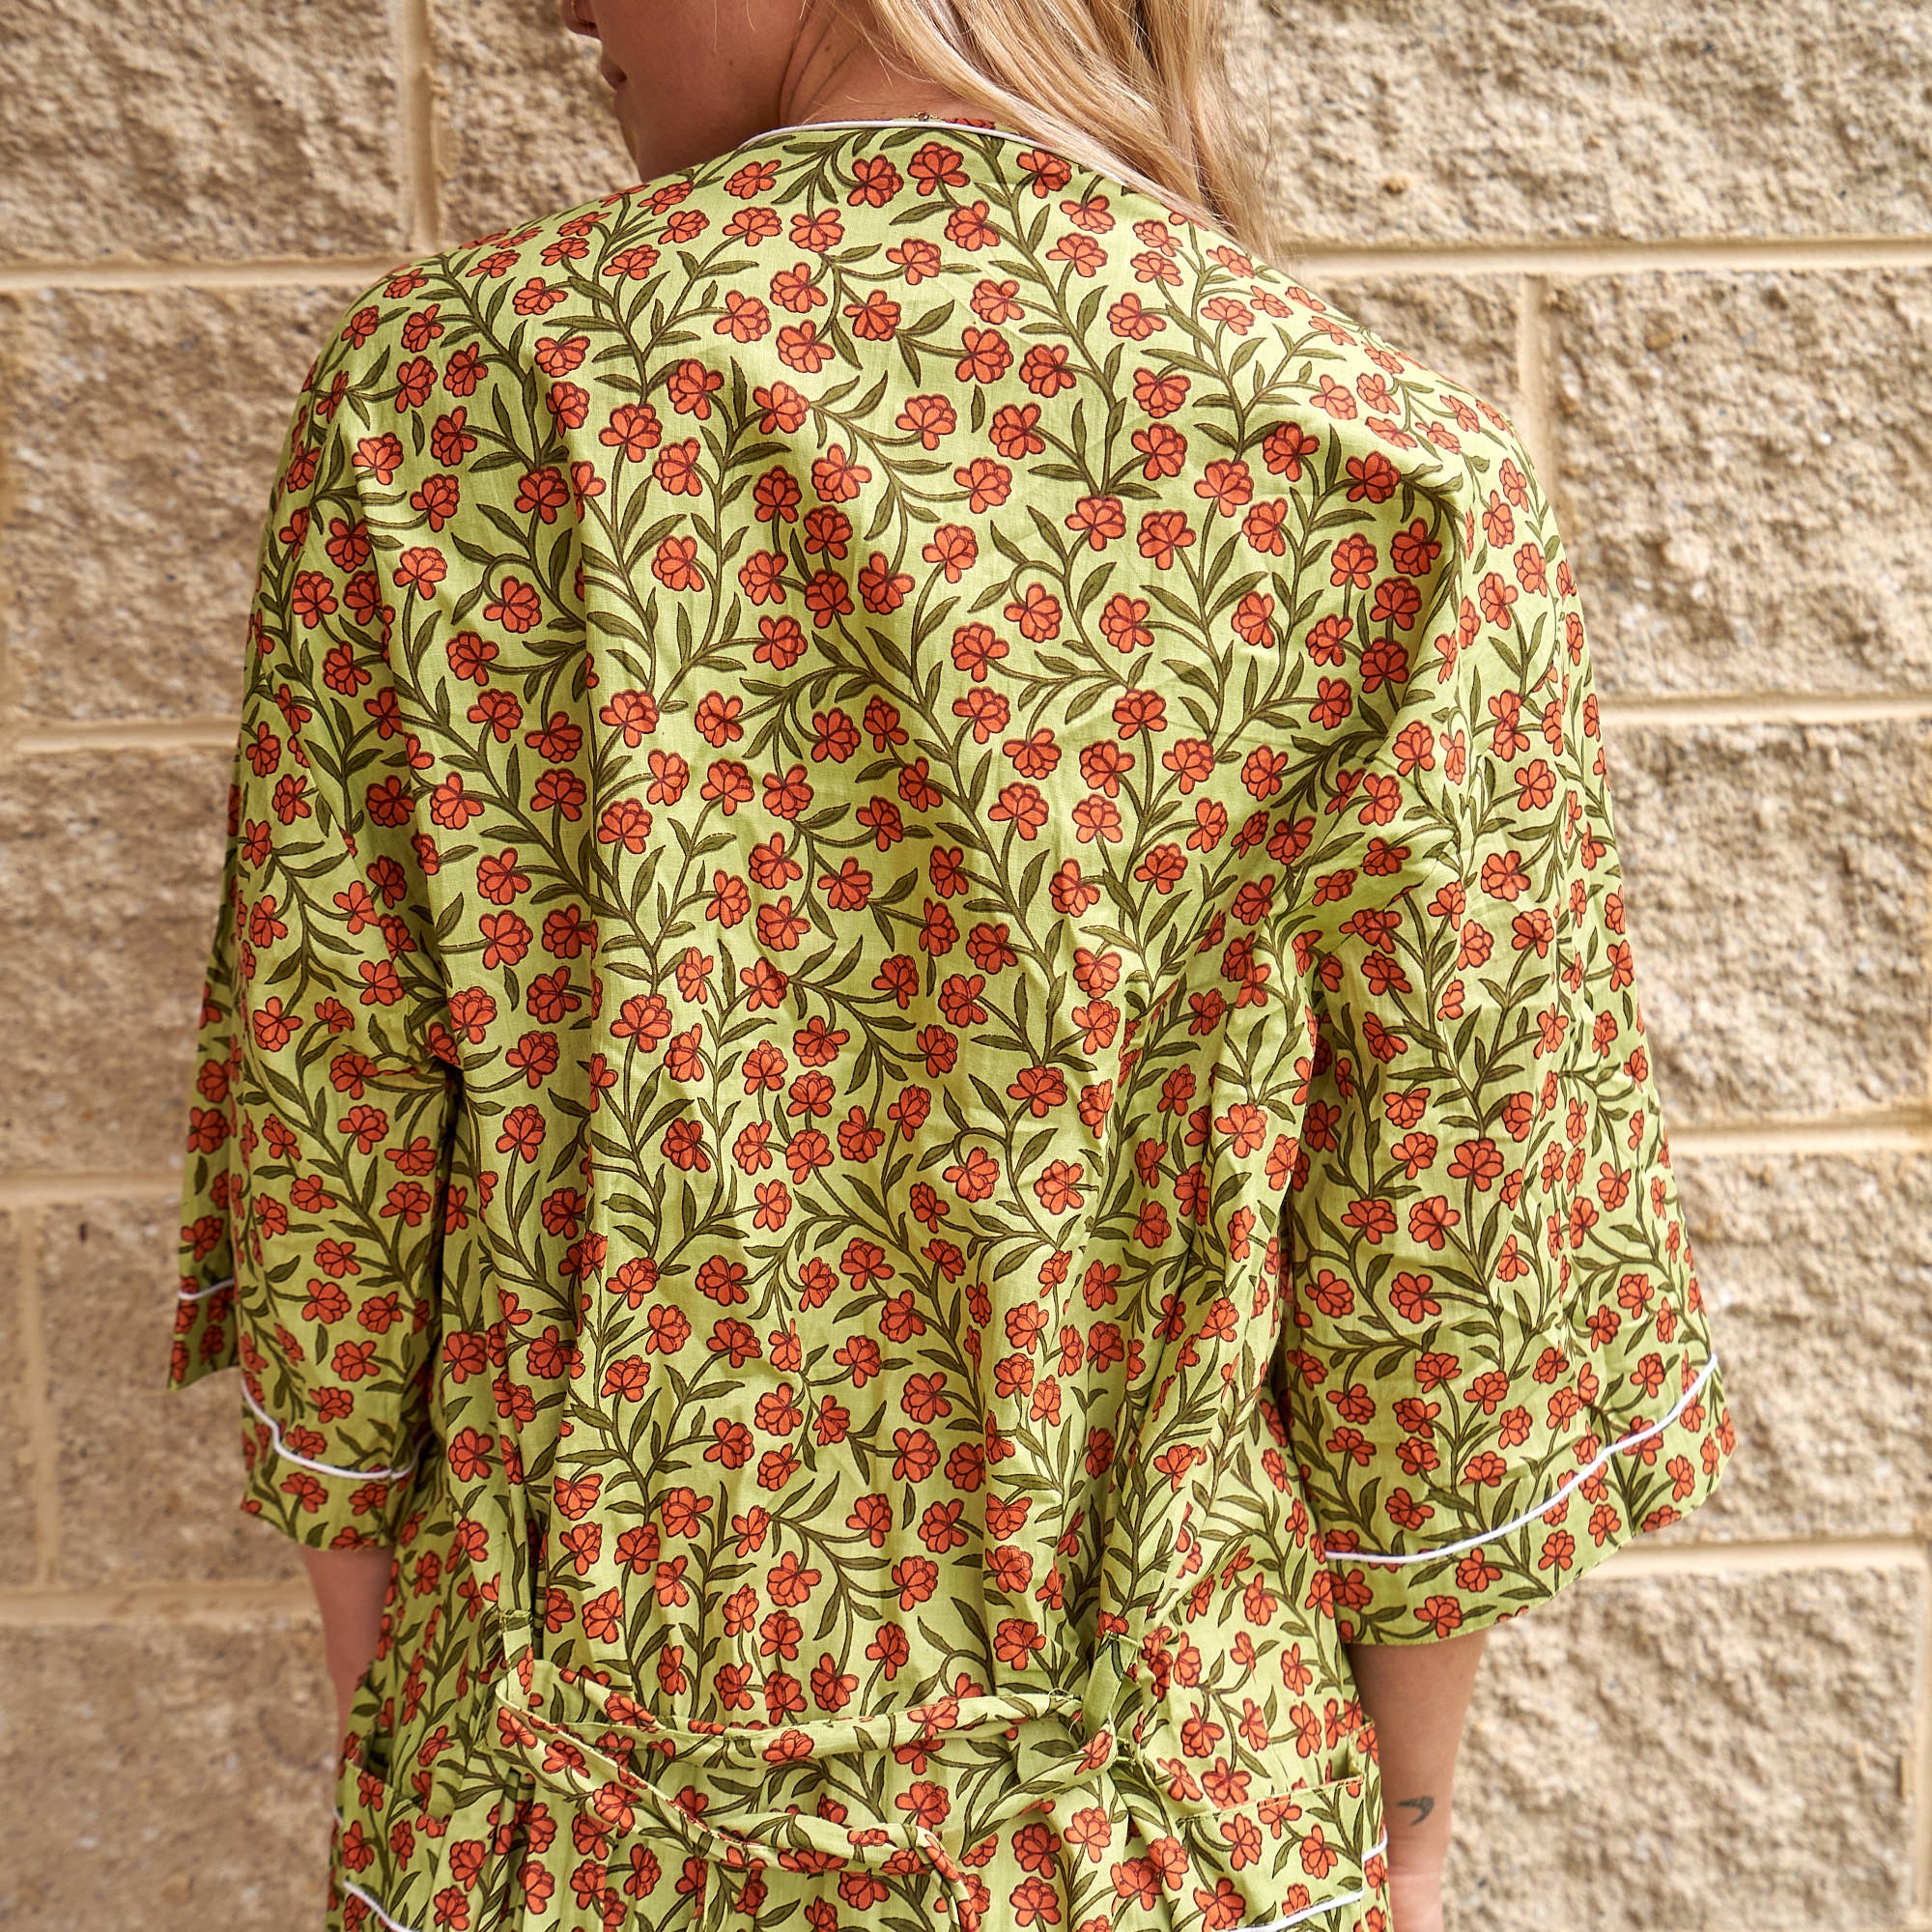 'Delicate Floral Dreams' 100% Cotton Kimono Robe